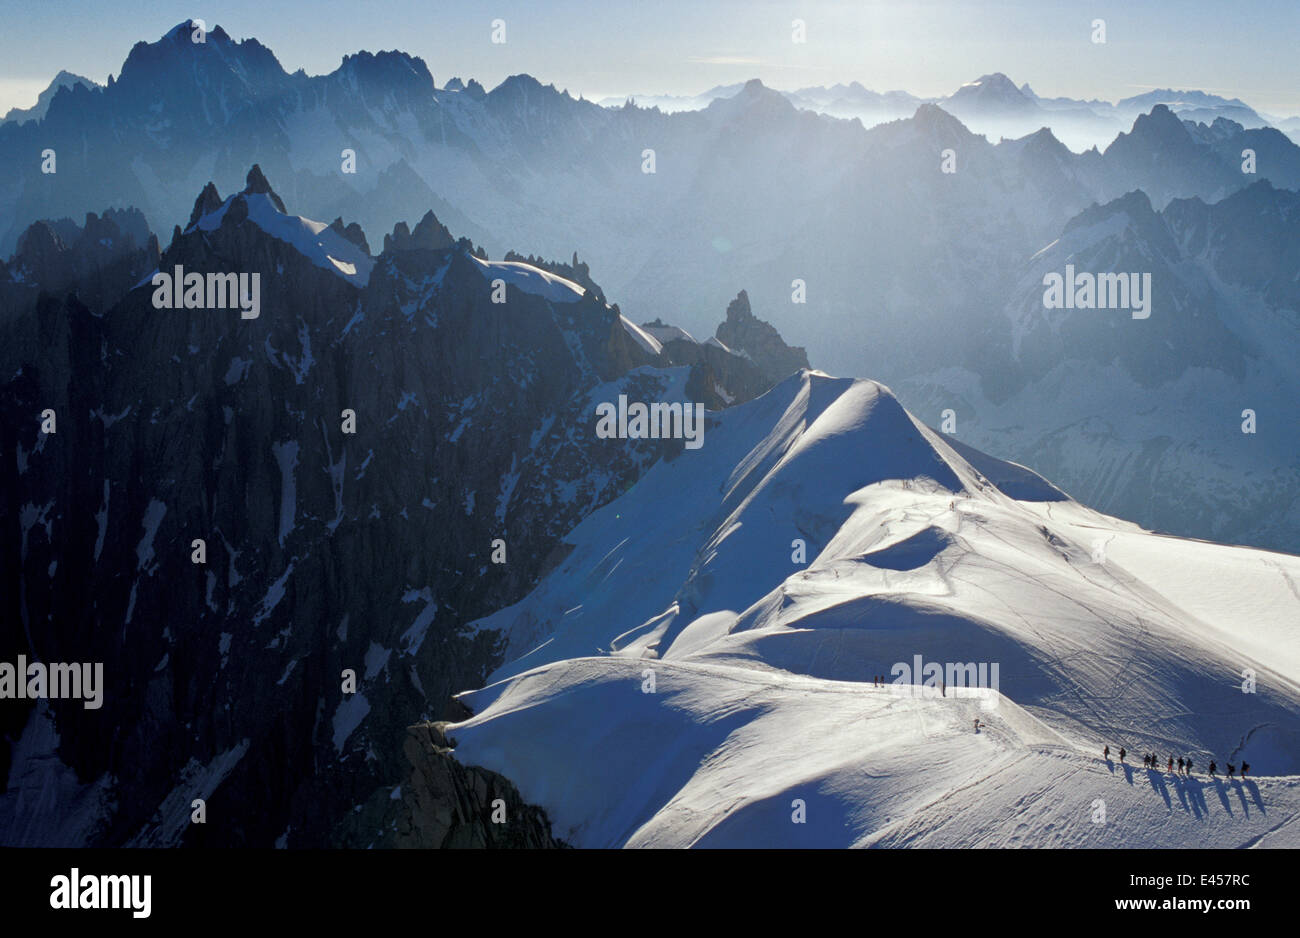 Climbers crossing the Plan de l'Aiguille, Aiguille du Midi, Alps, France Stock Photo